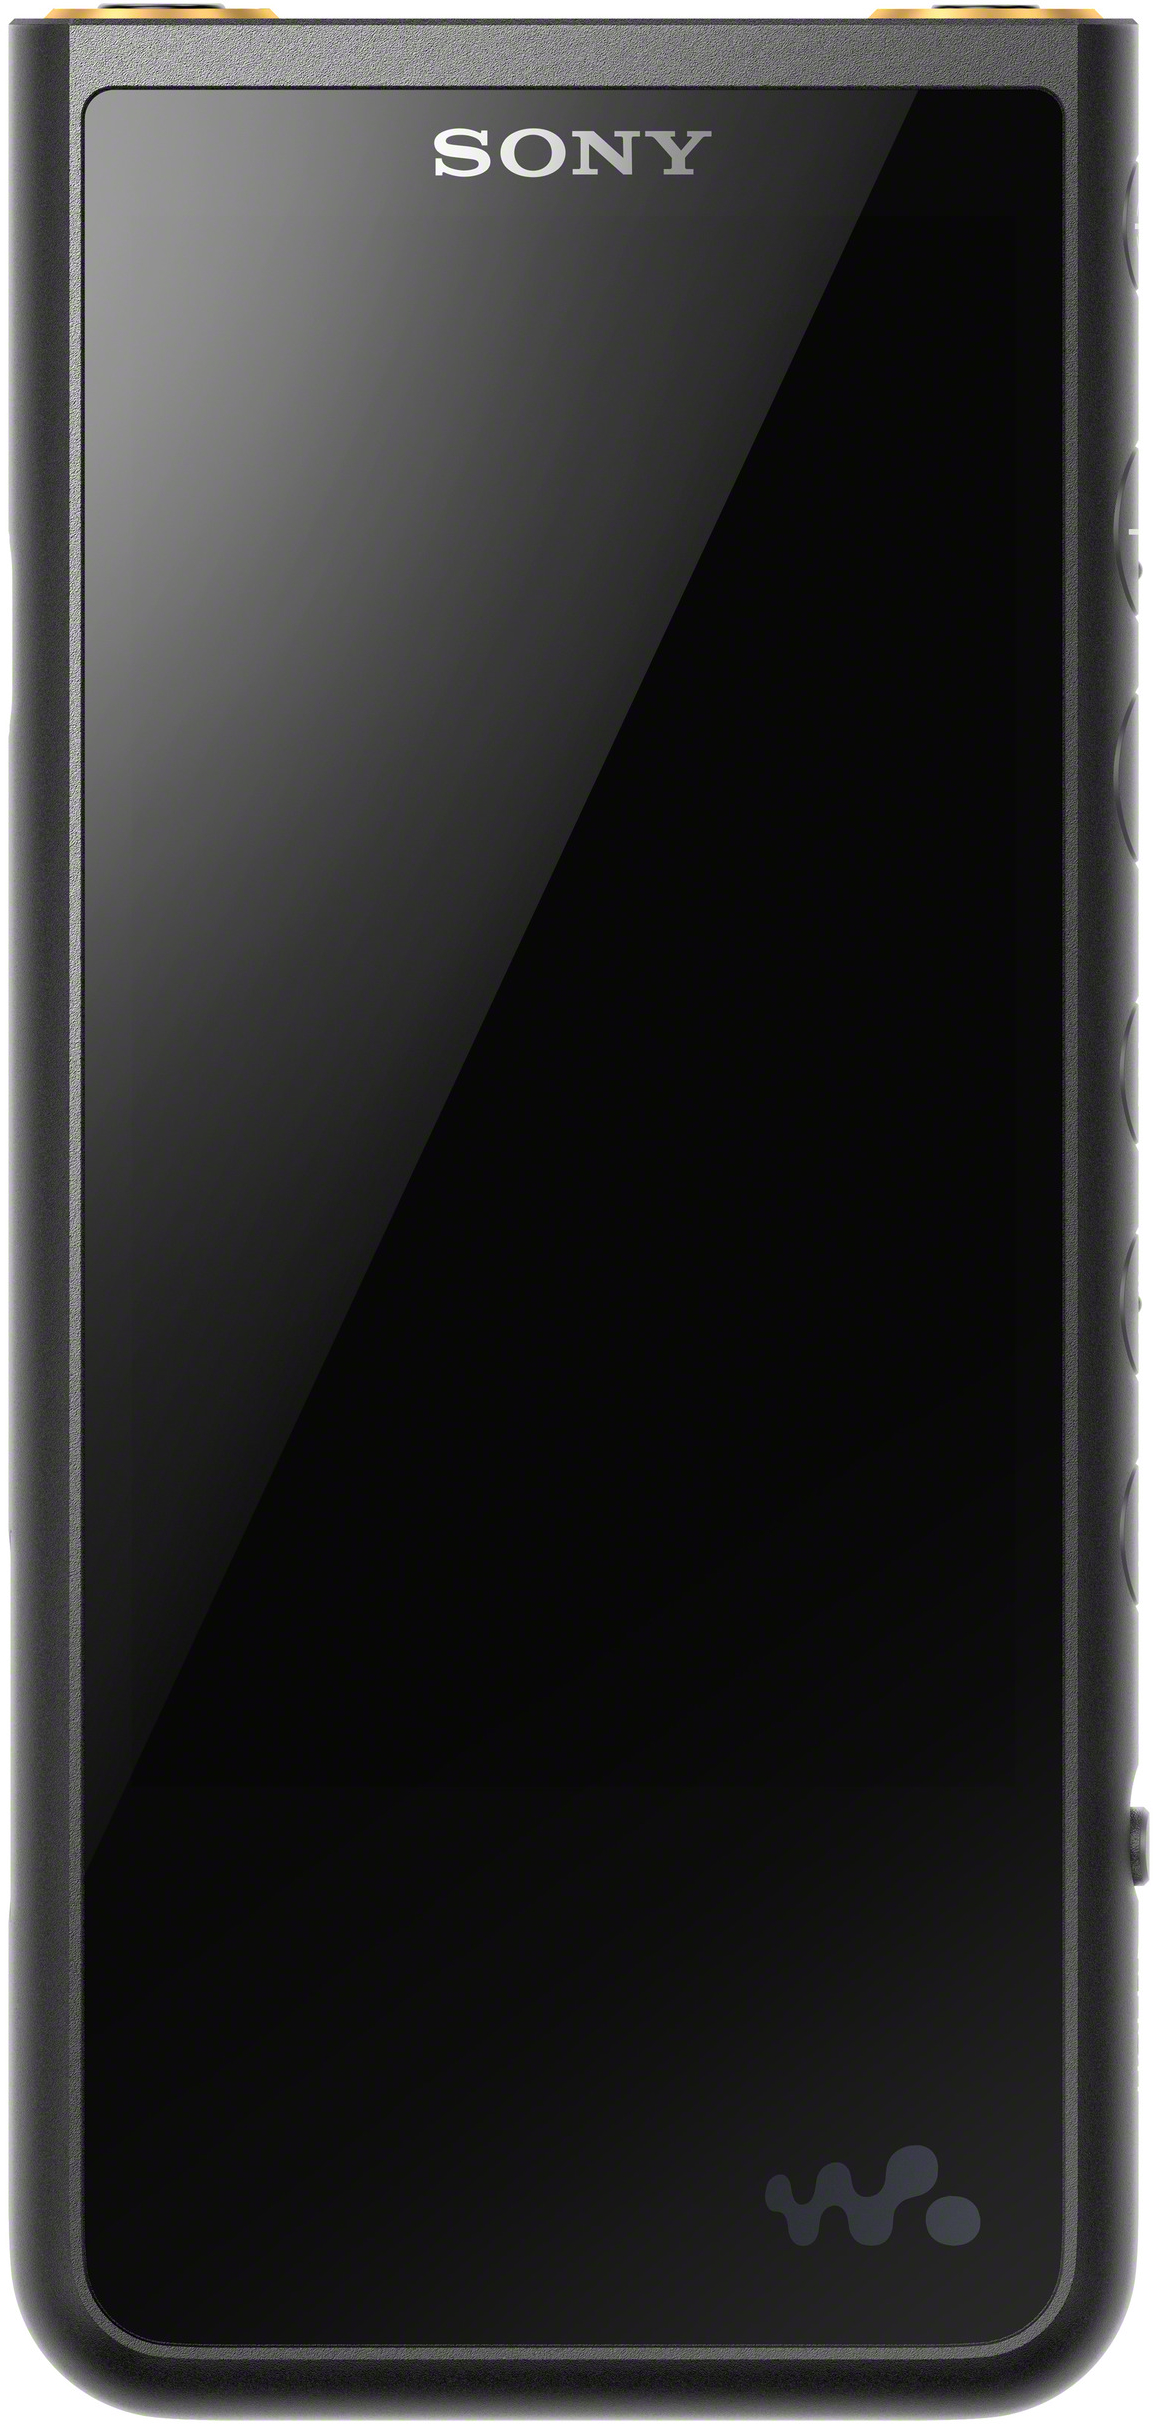 Walkman (64 NW-ZX507 Mp3-Player Schwarz) GB, SONY